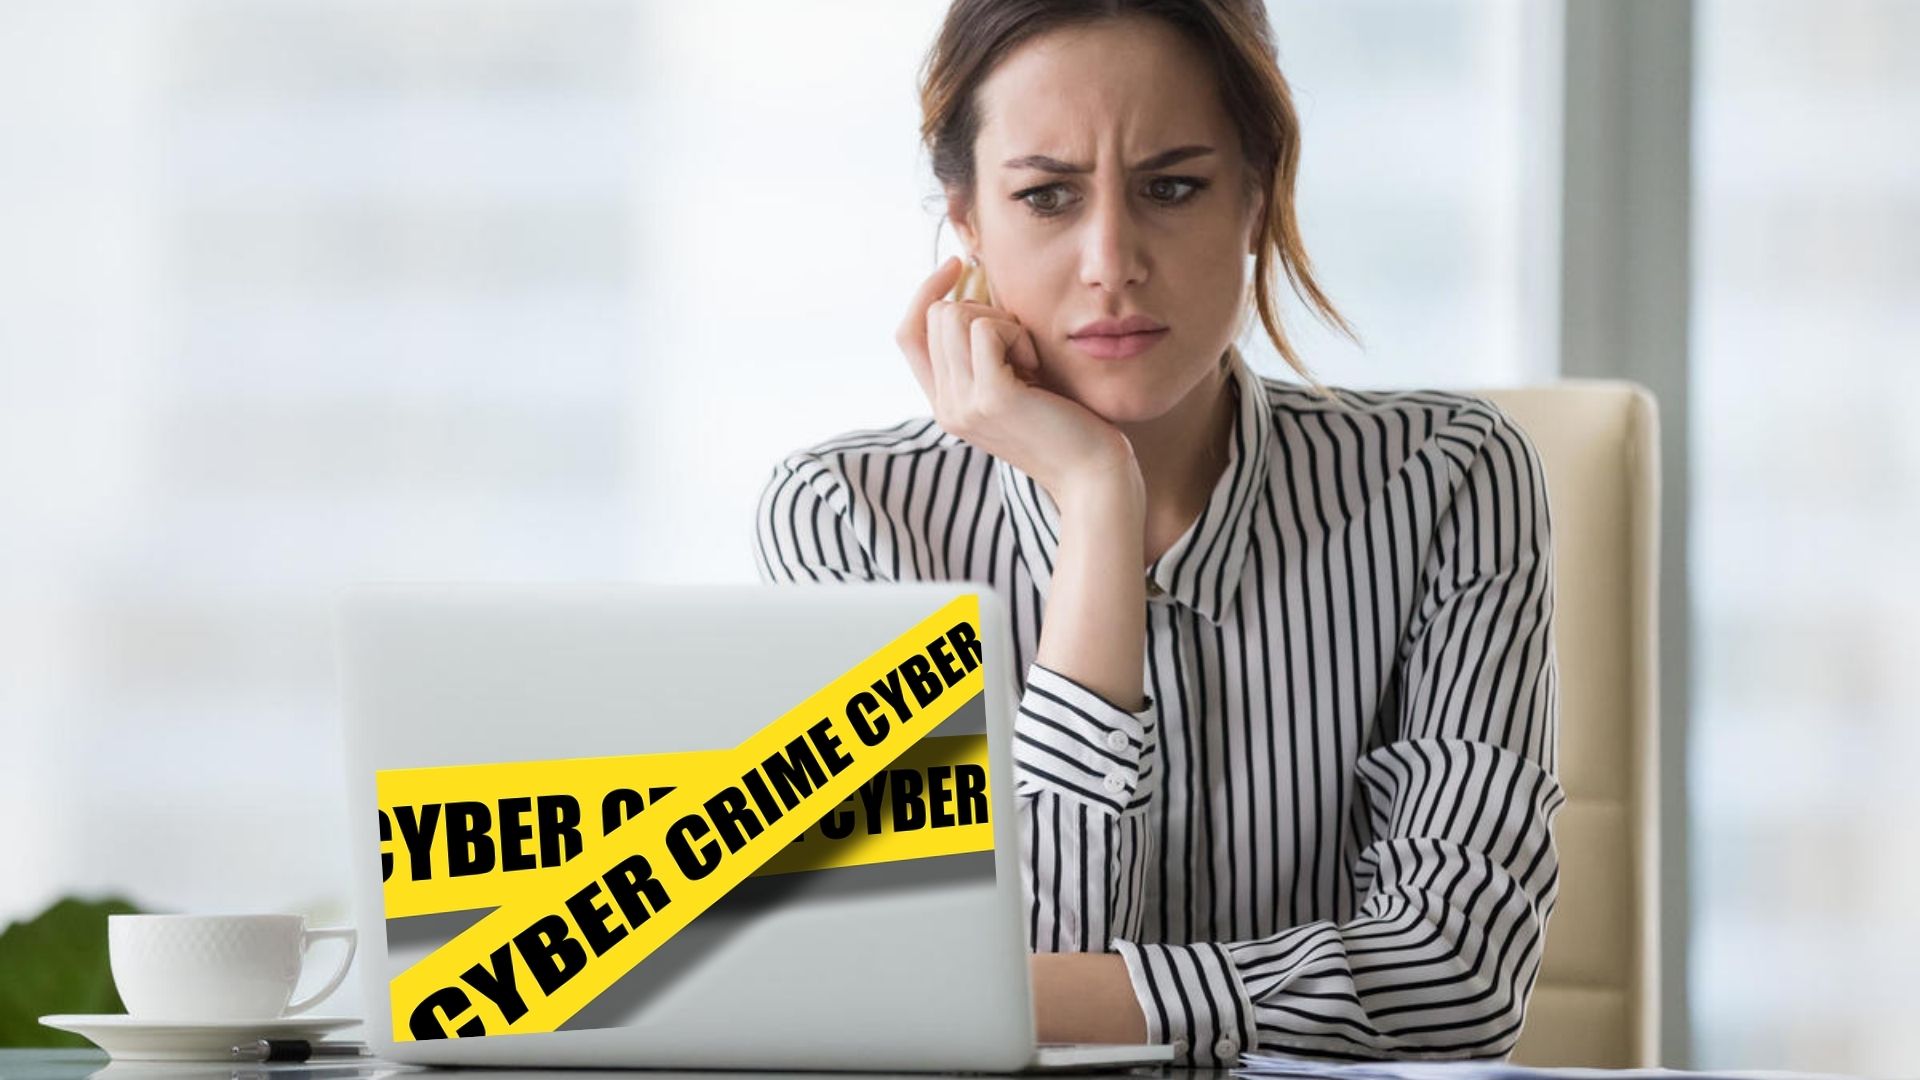 report cyber crime